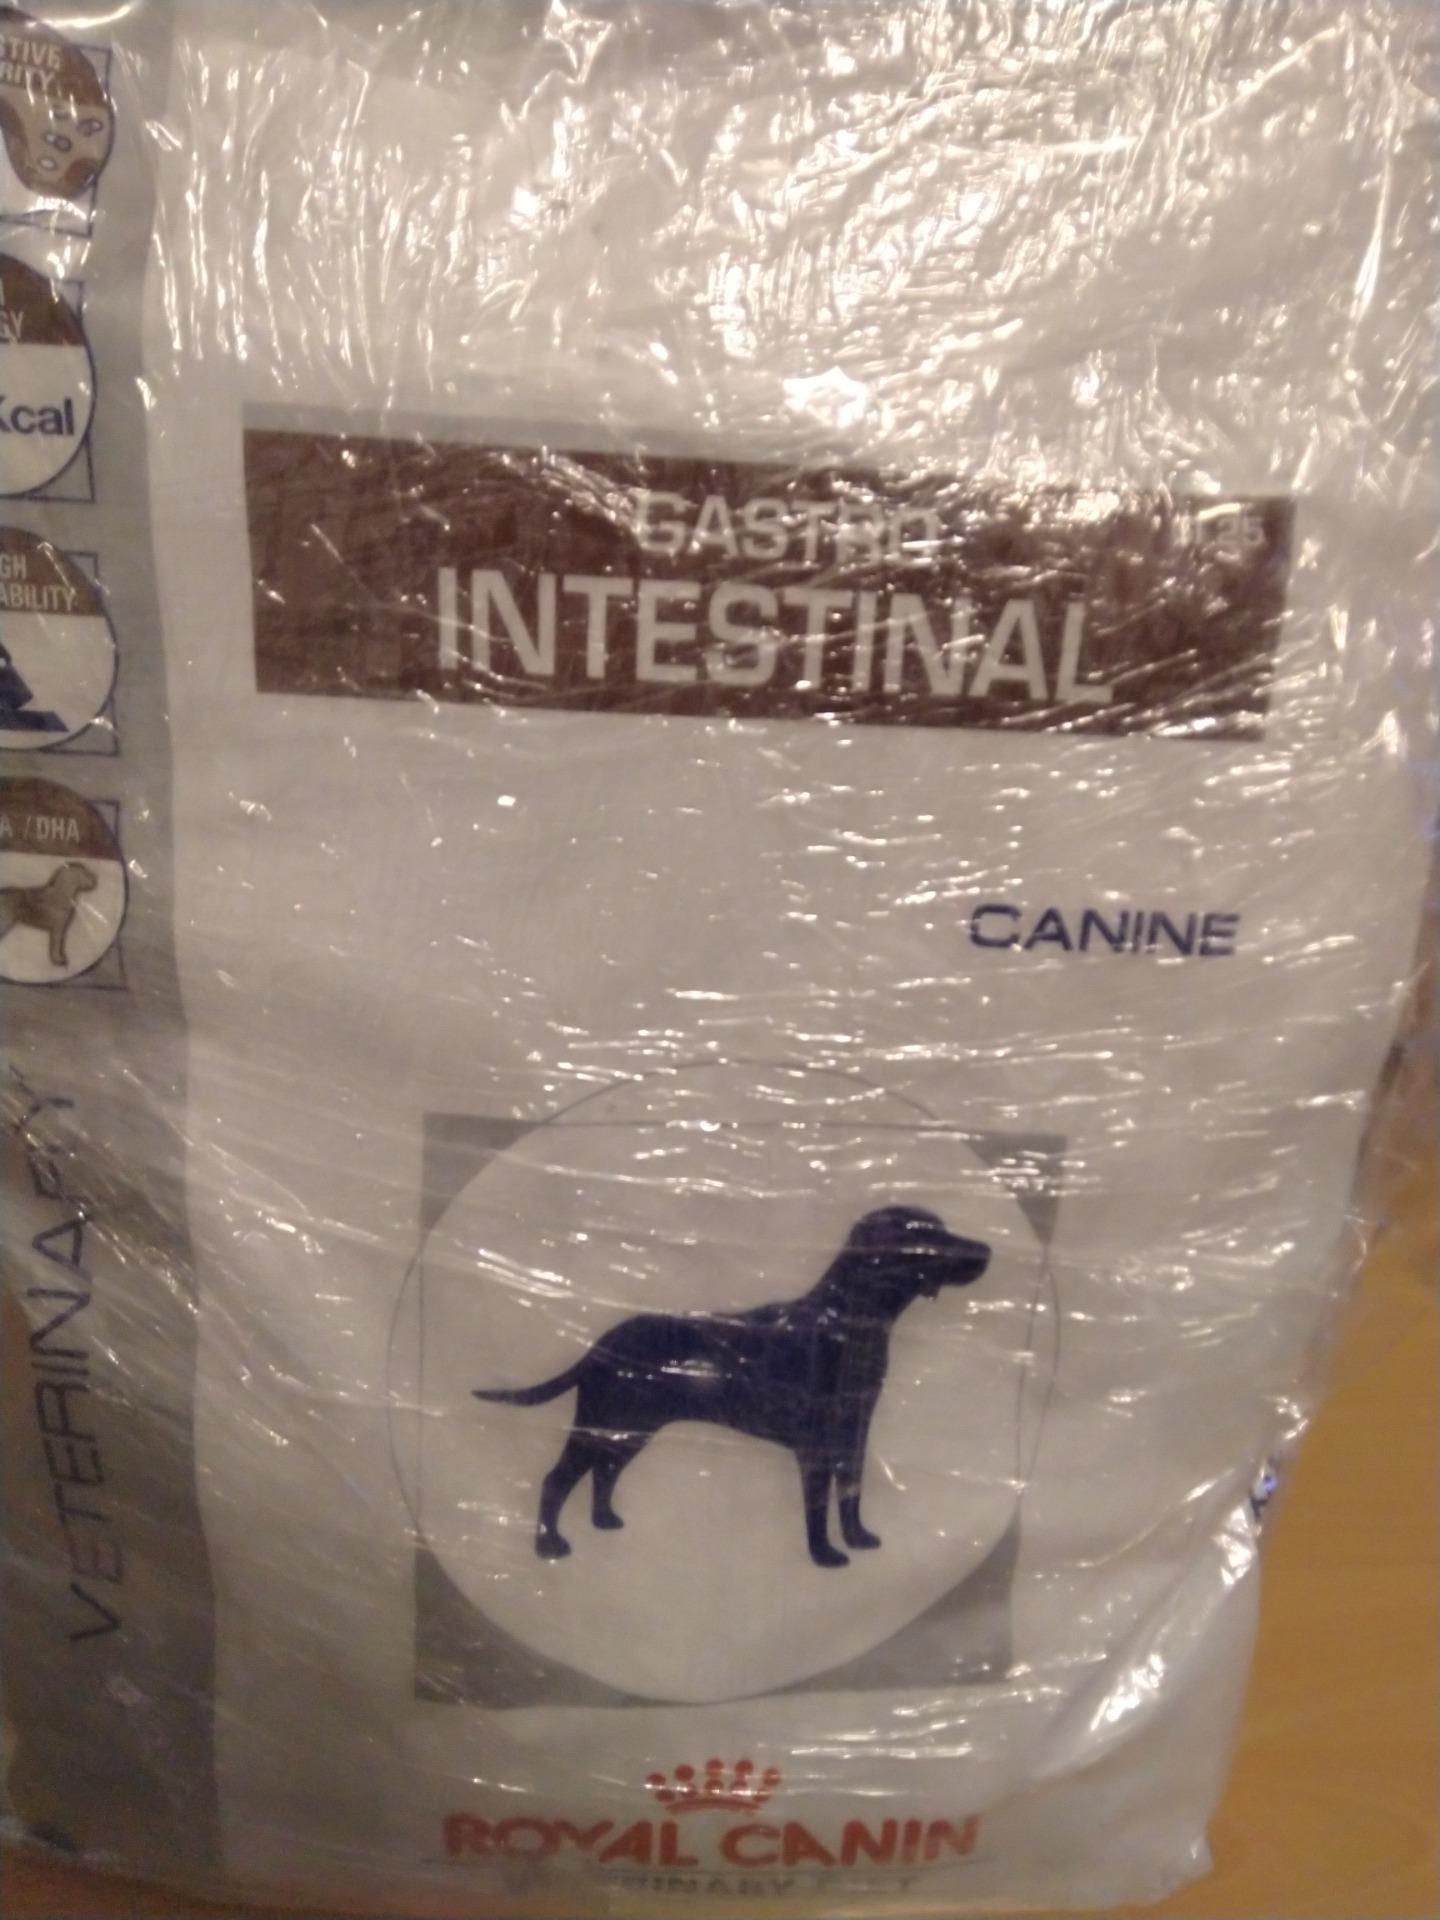 royal canin gastro intestinal 14 kg